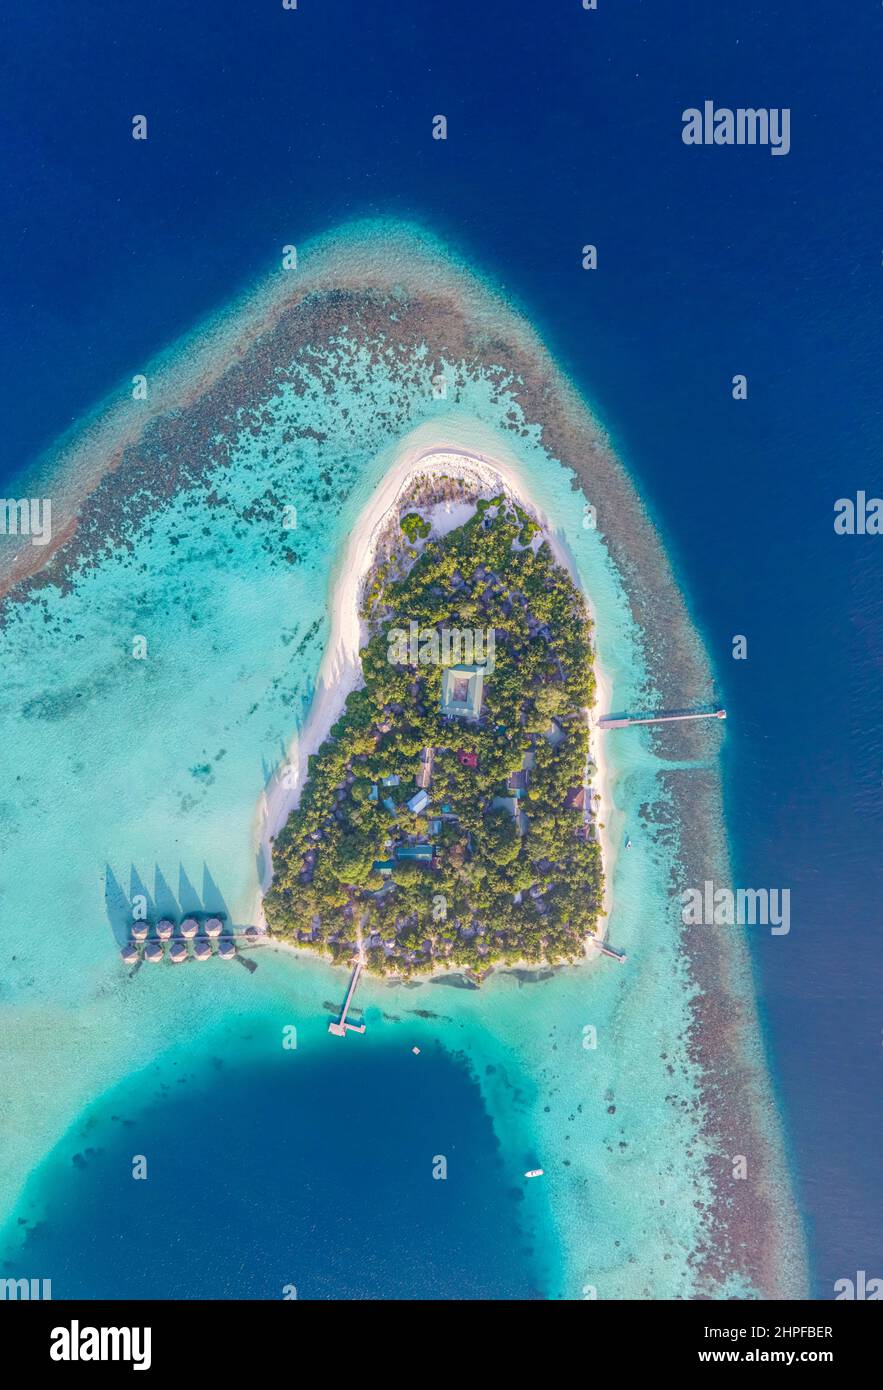 Île tropicale avec plage de sable blanc, eau de mer turquoise et récif de corail aérien de haut en bas vue de drone. Vacances parfaites vacances voyage destinatio Banque D'Images